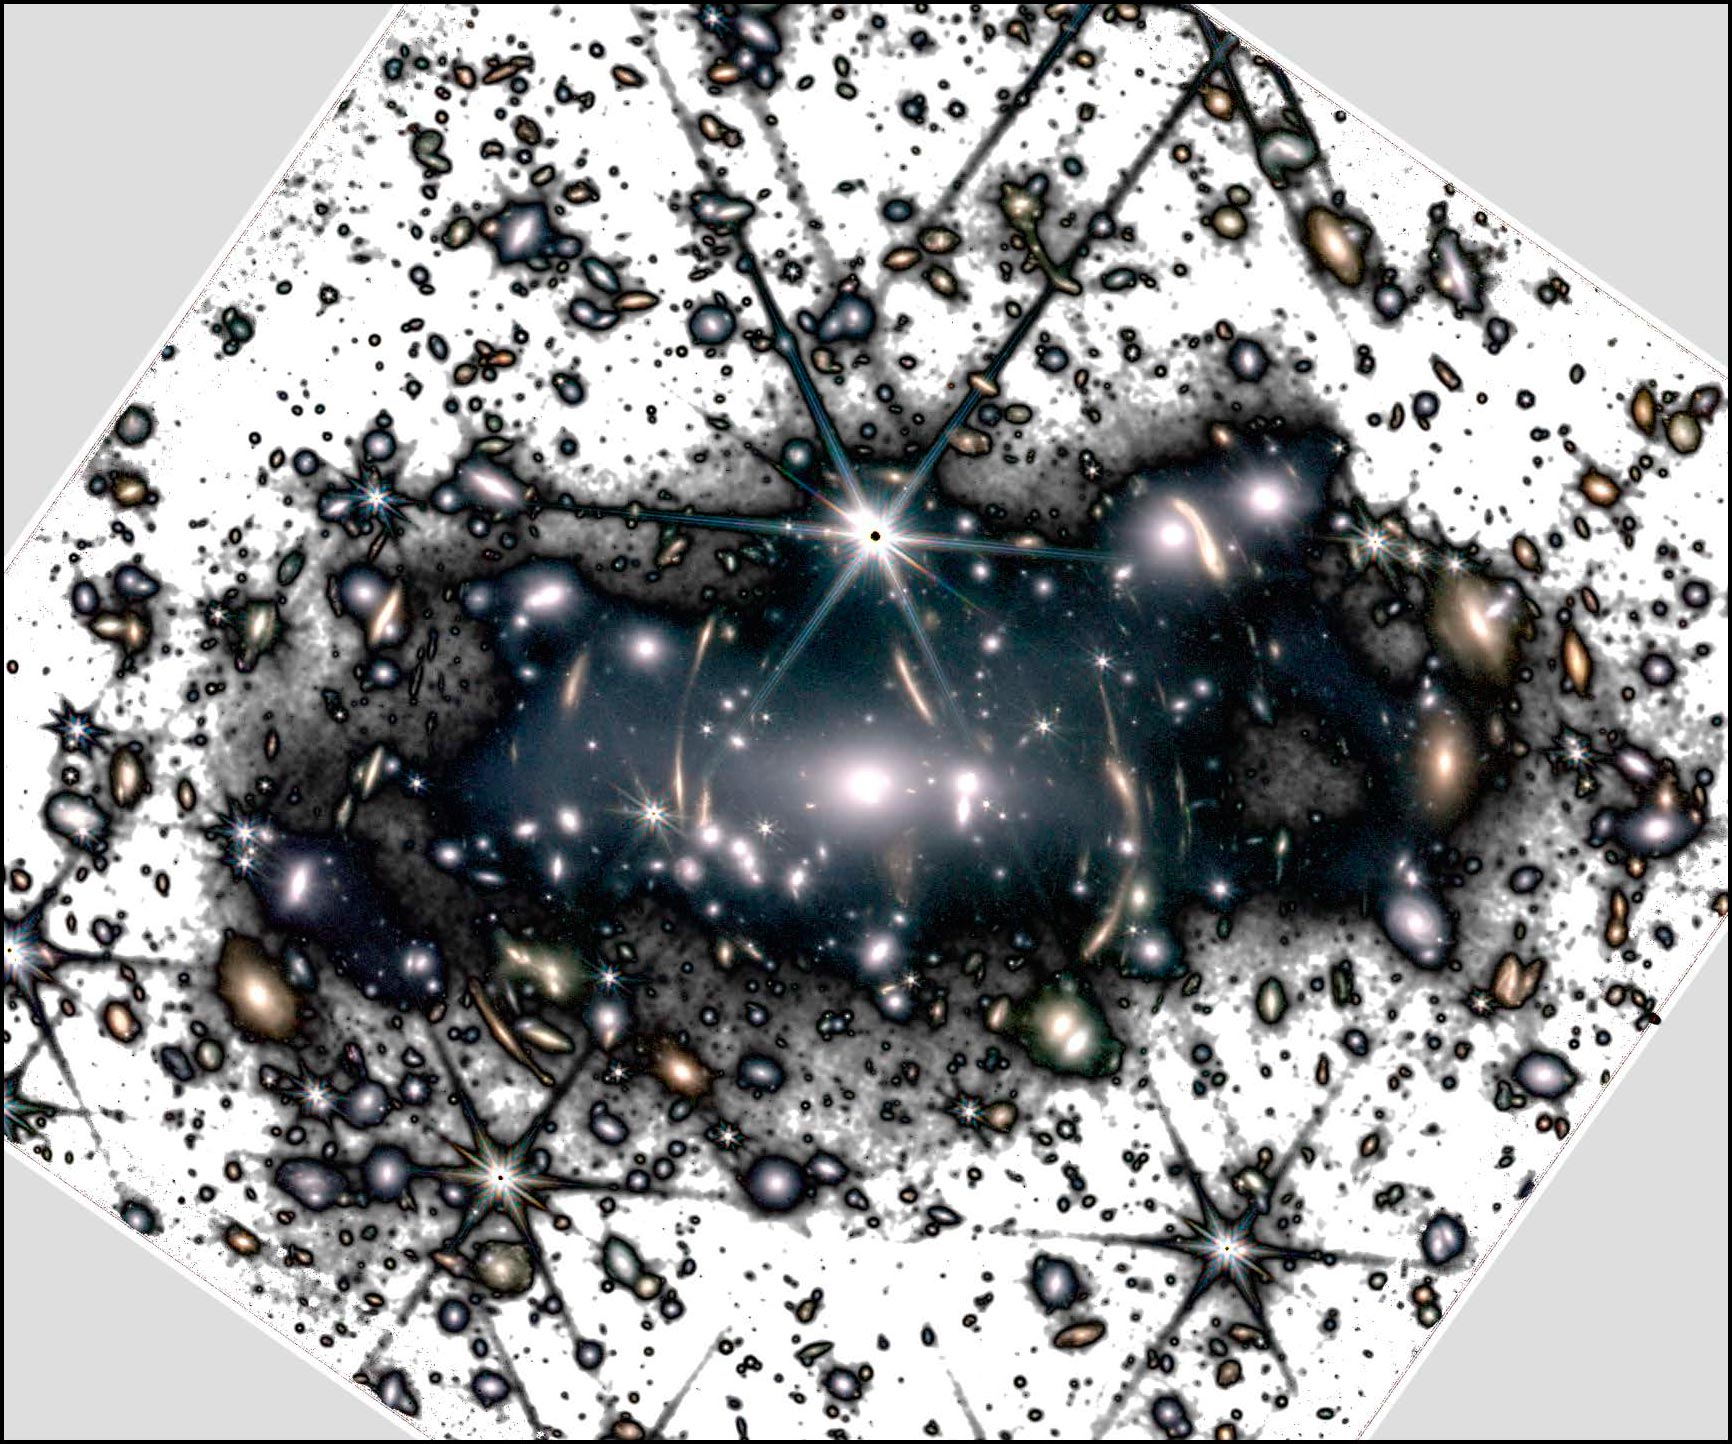 Der unvergleichliche Blick des James-Webb-Teleskops auf gespenstisches Licht in Galaxienhaufen